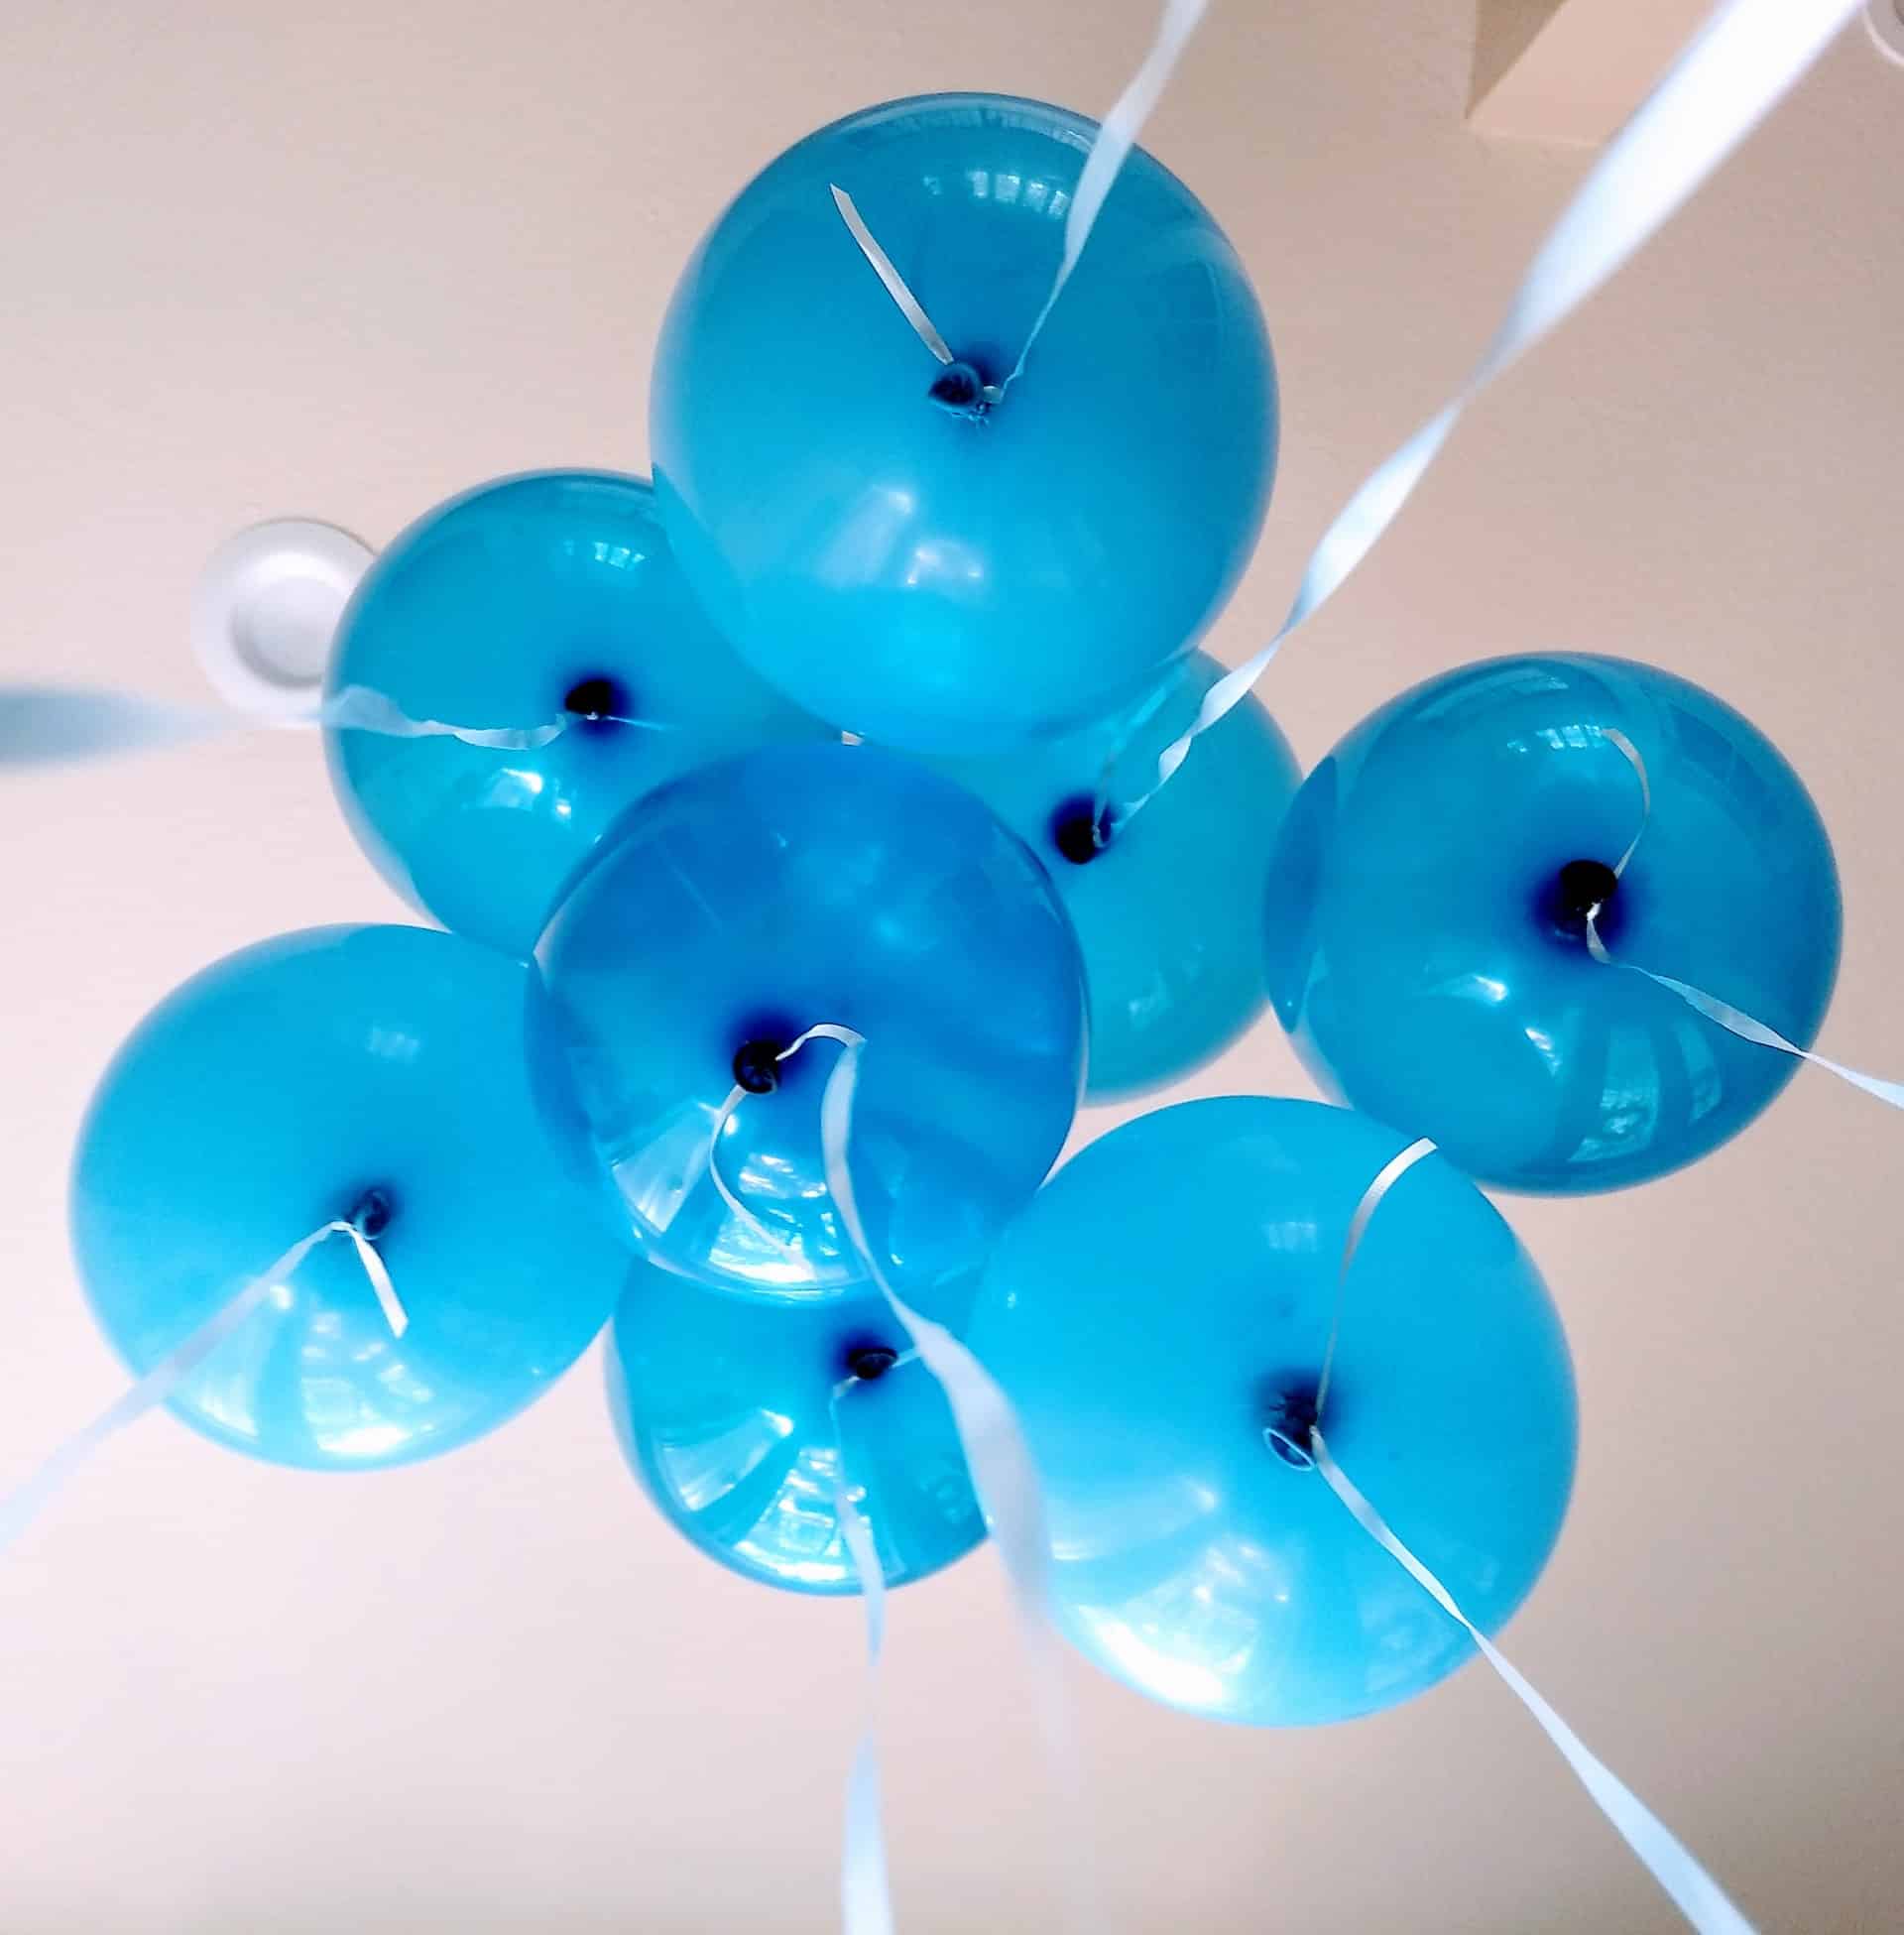 Helium Till Ballonger